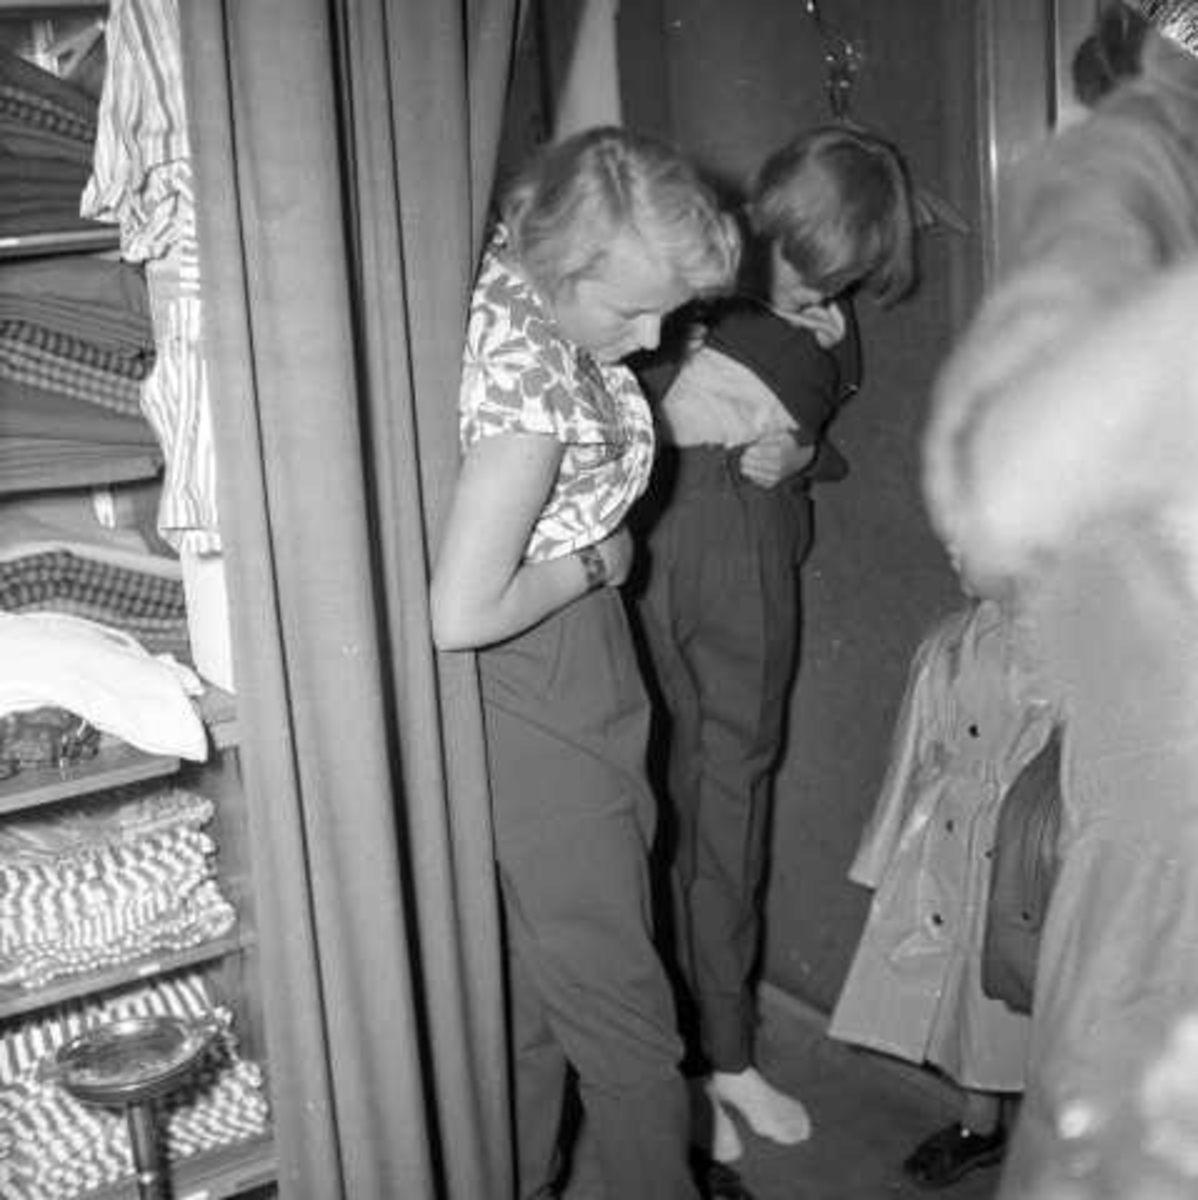 Høstsalg, salg av klær, 1956.